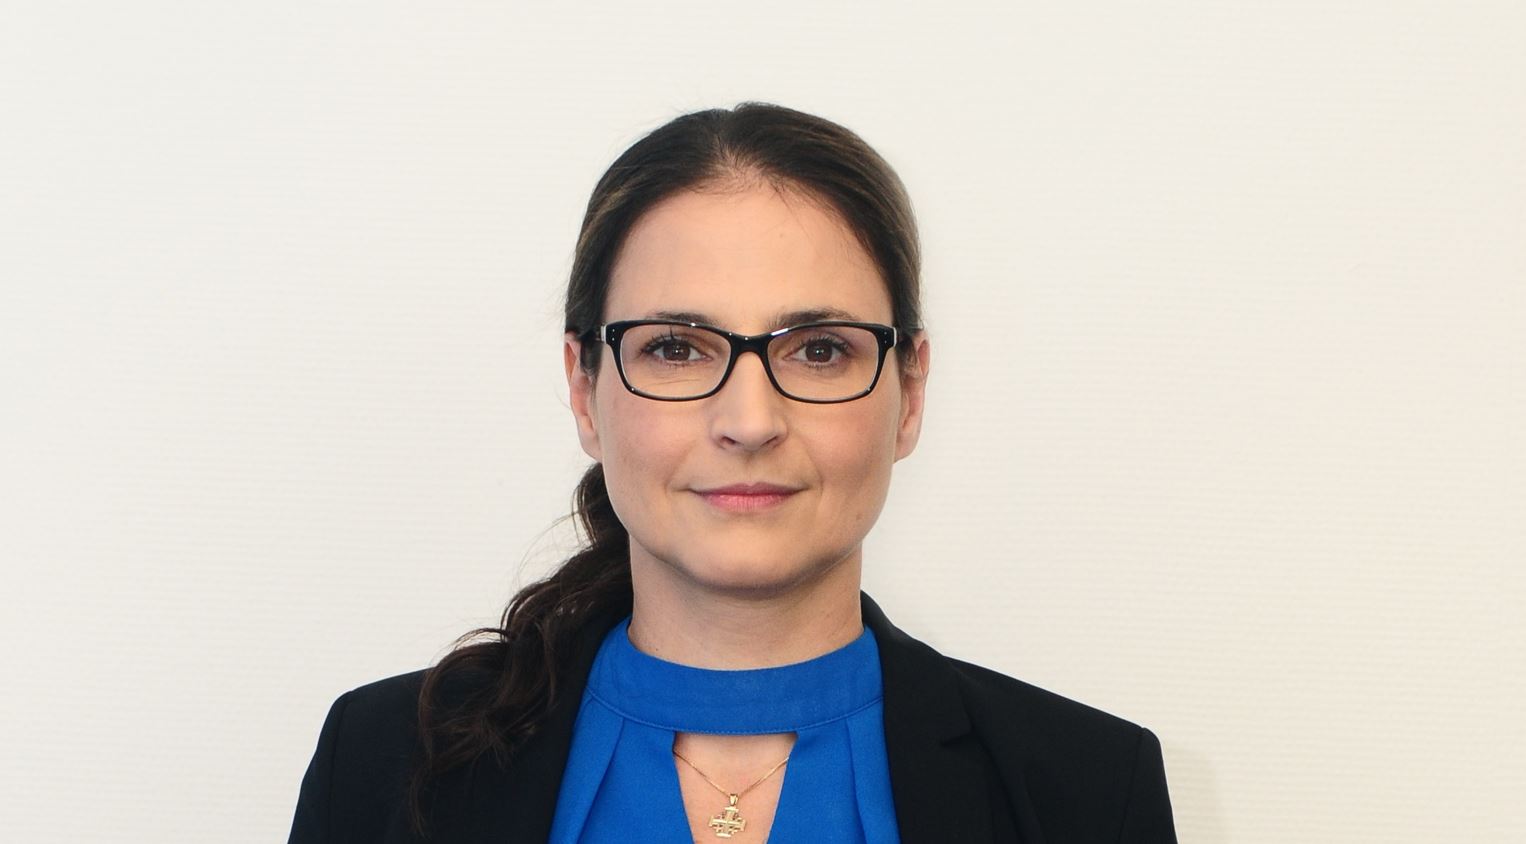 Vály Judit, az Euroleasing vezérigazgatója